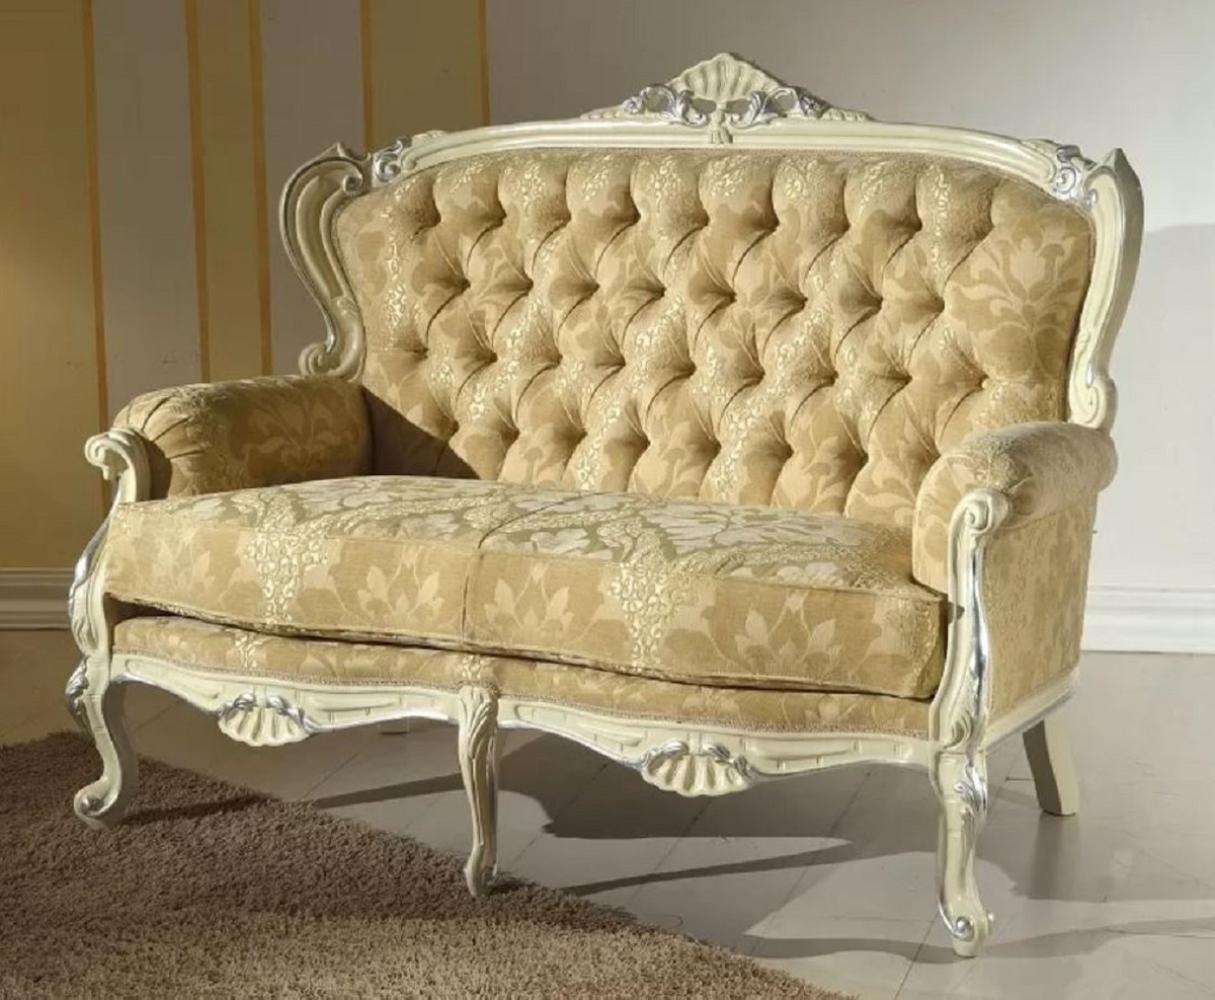 Casa Padrino Luxus Barock Sofa Gold / Cremefarben / Silber - Edles Wohnzimmer Sofa mit elegantem Muster - Barock Möbel - Luxus Qualität - Made in Italy Bild 1